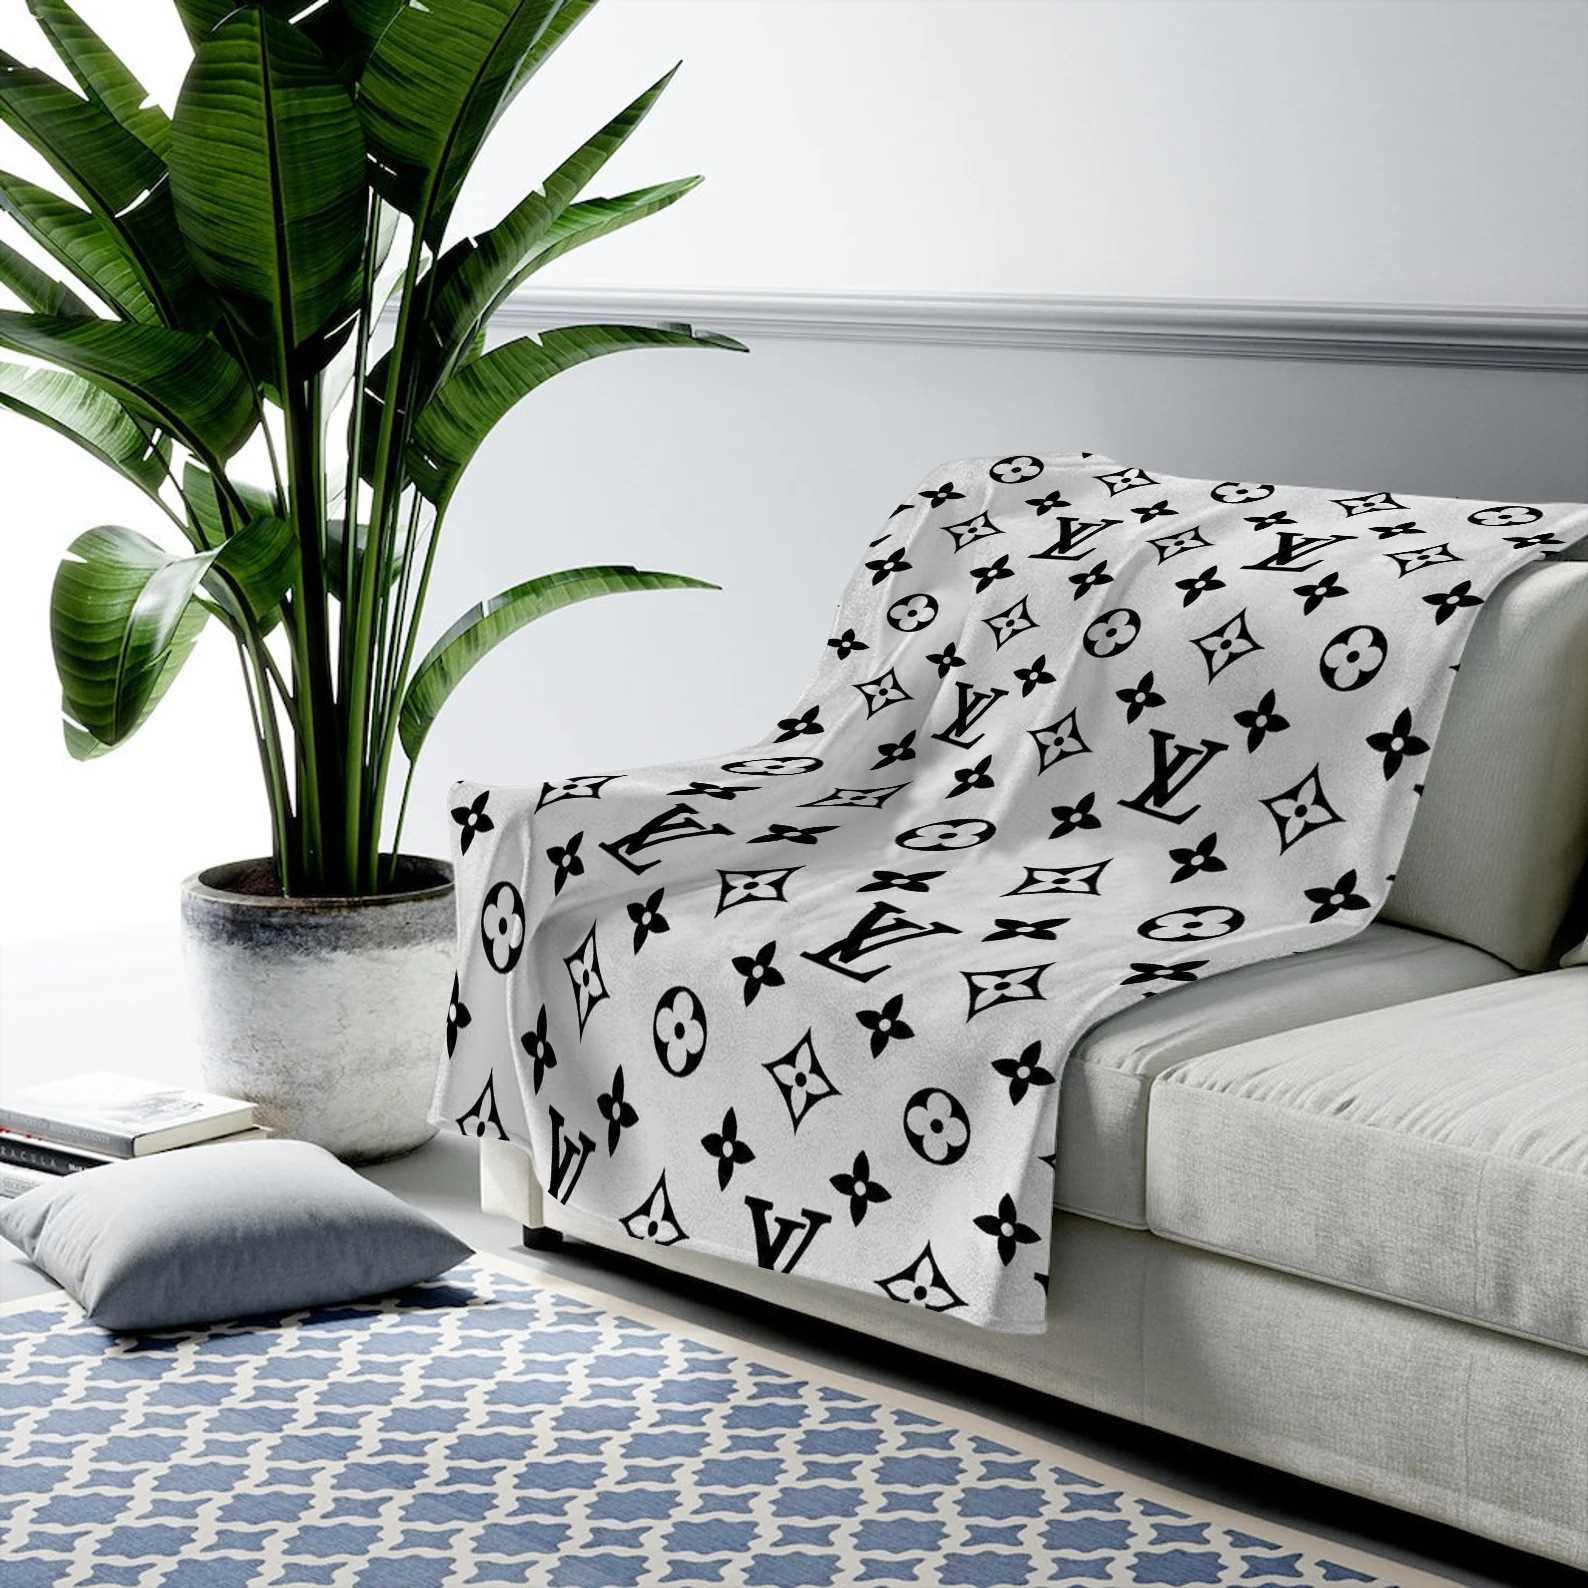 Louis Vuitton Supreme White Fleece Blanket Home Decor Fashion Brand Luxury